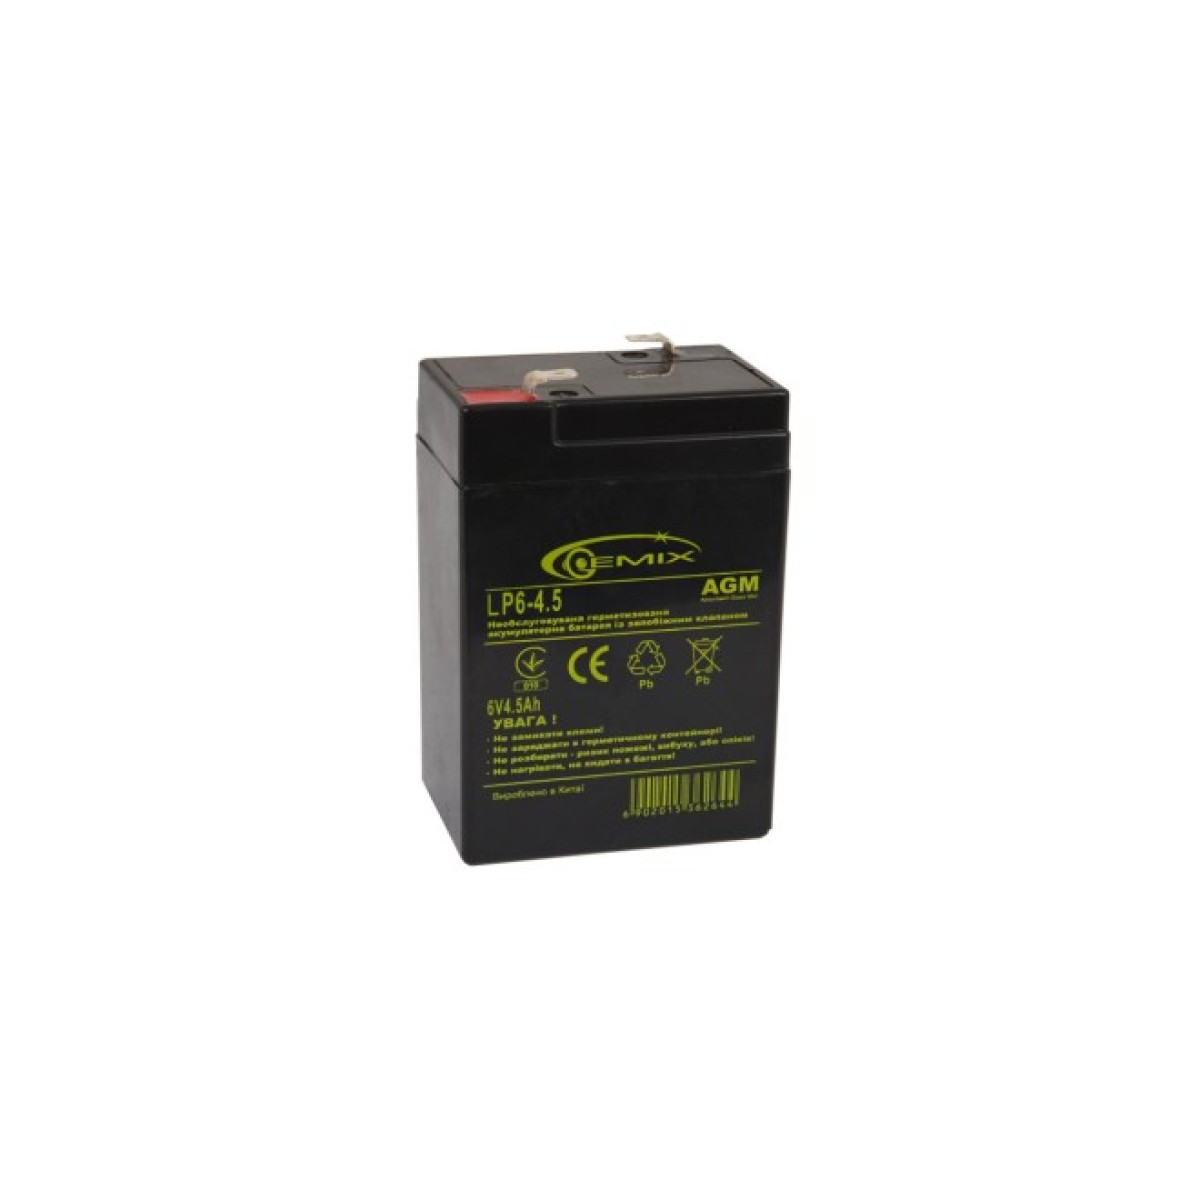 Батарея к ИБП Gemix 6В 4.5 Ач (LP6-4.5 Т2) 256_256.jpg